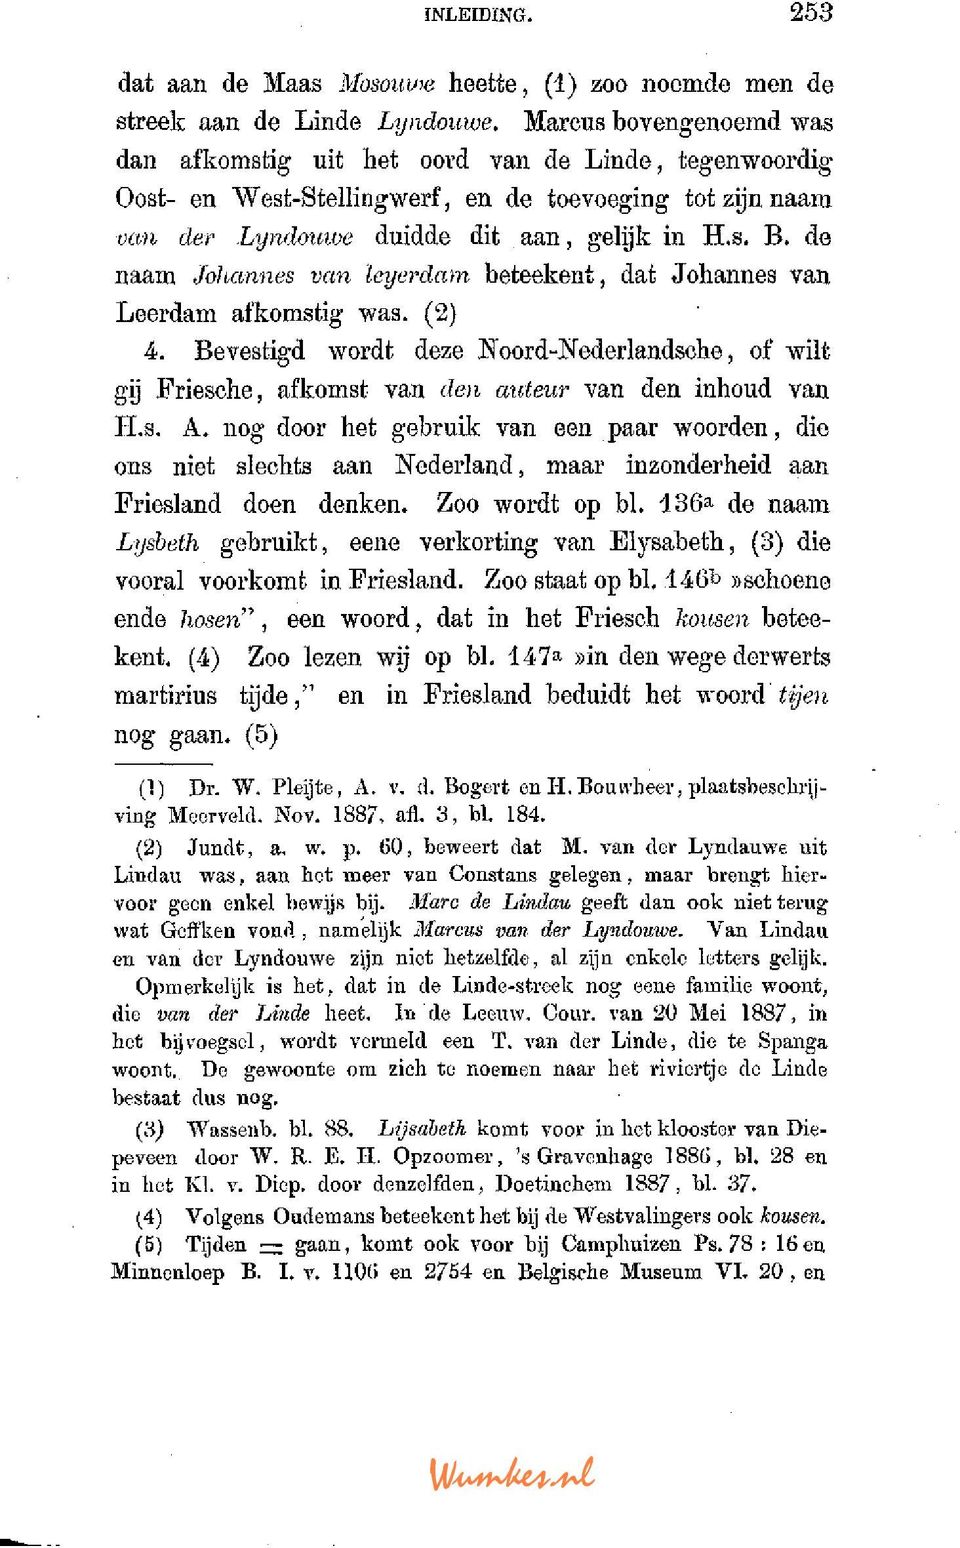 de naam Johannes van leyerdam beteekent, dat Johannes van Leerdam afkomstig was. (2) 4. Bevestigd wordt deze ISToord-îfederlandsohe, of wilt gij Friesche, afkomst van den auteur van den inhoud van H.